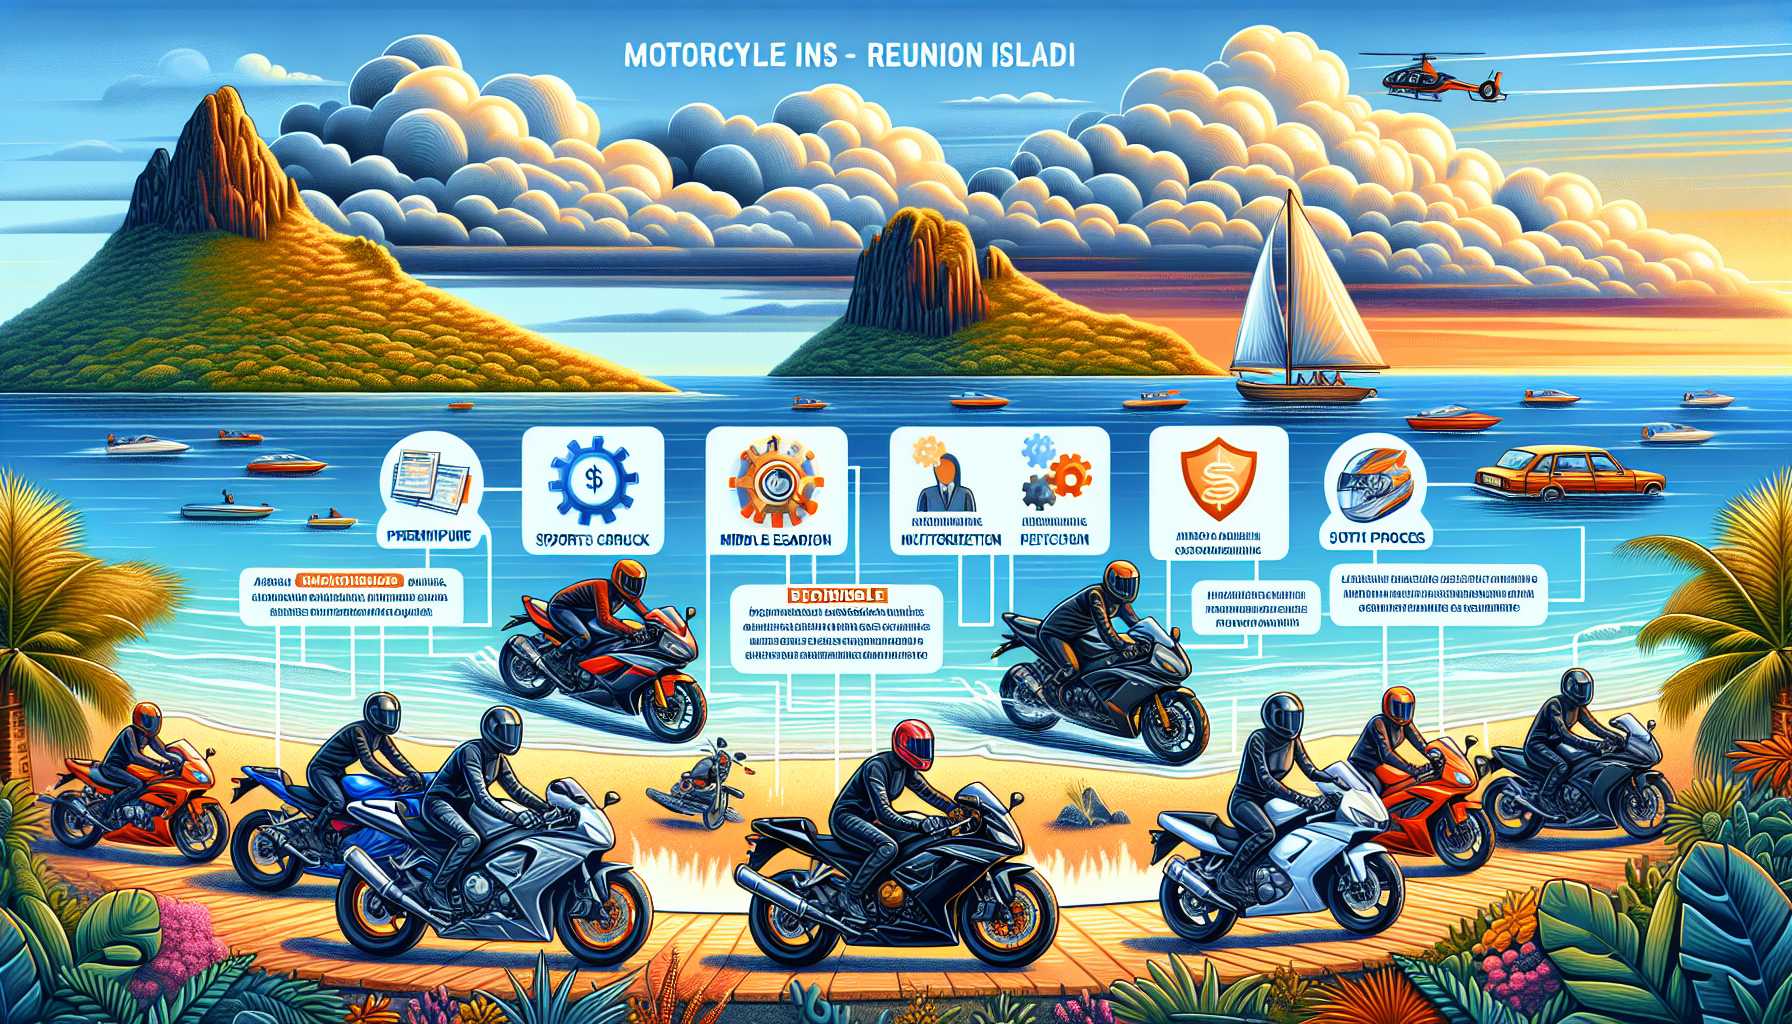 découvrez comment choisir la meilleure assurance moto à la réunion pour rouler en toute sécurité. obtenez des conseils pour trouver l'assurance moto qui vous convient.